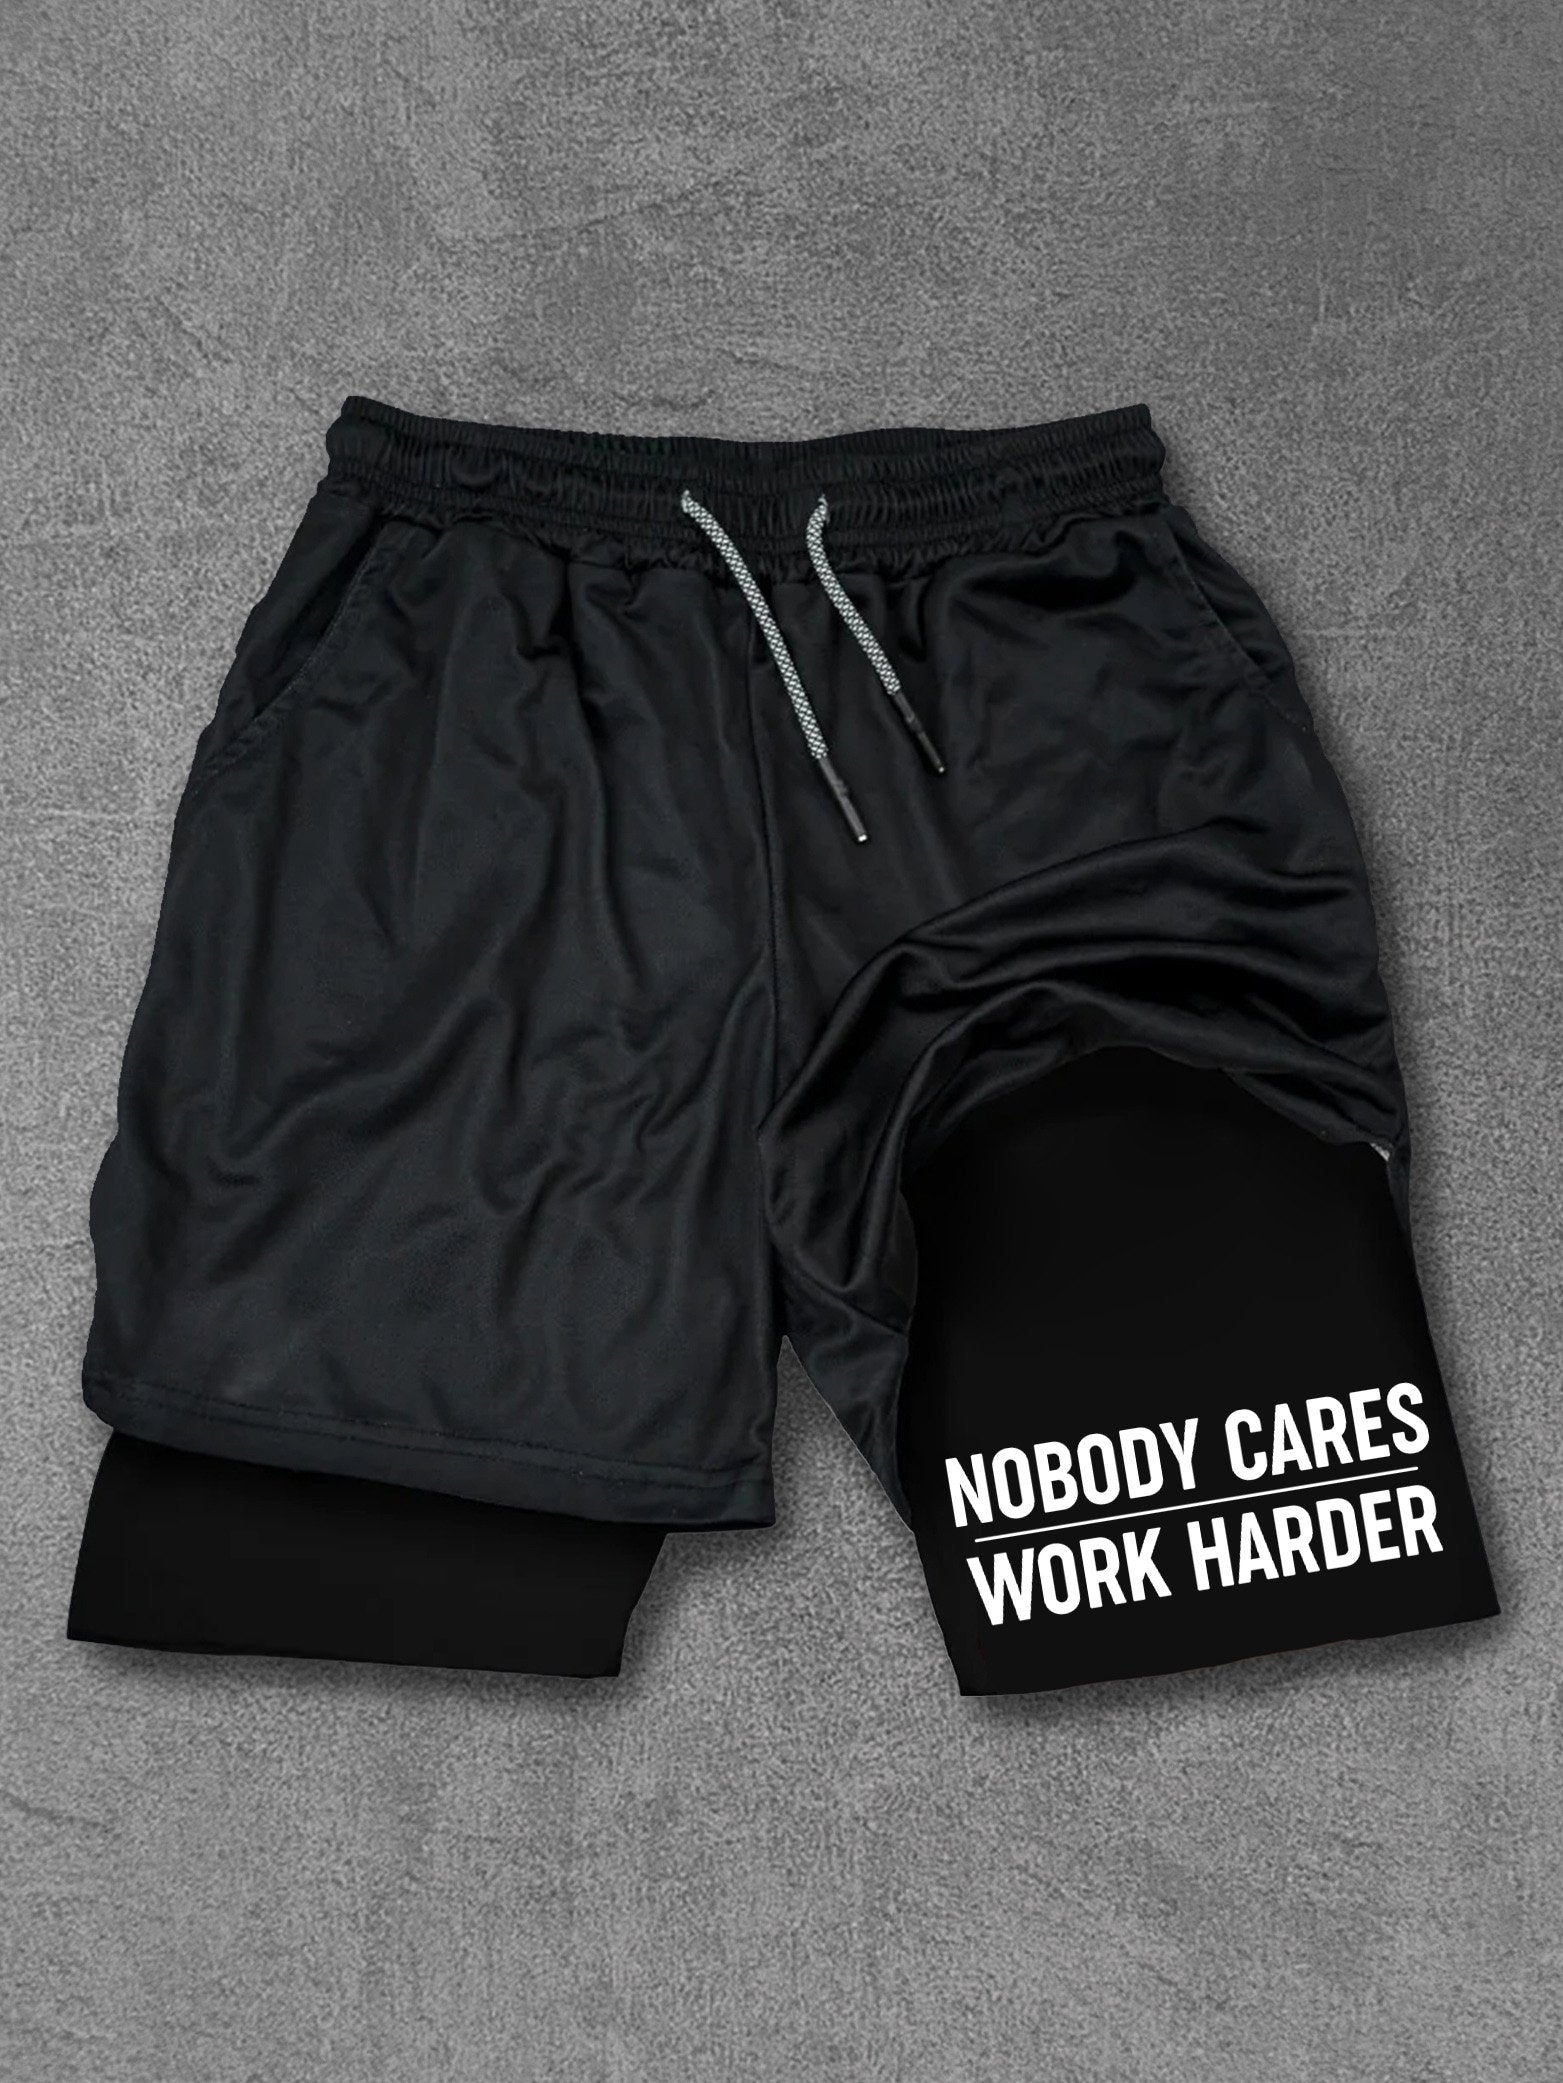 nobody cares work harder Performance Training Shorts